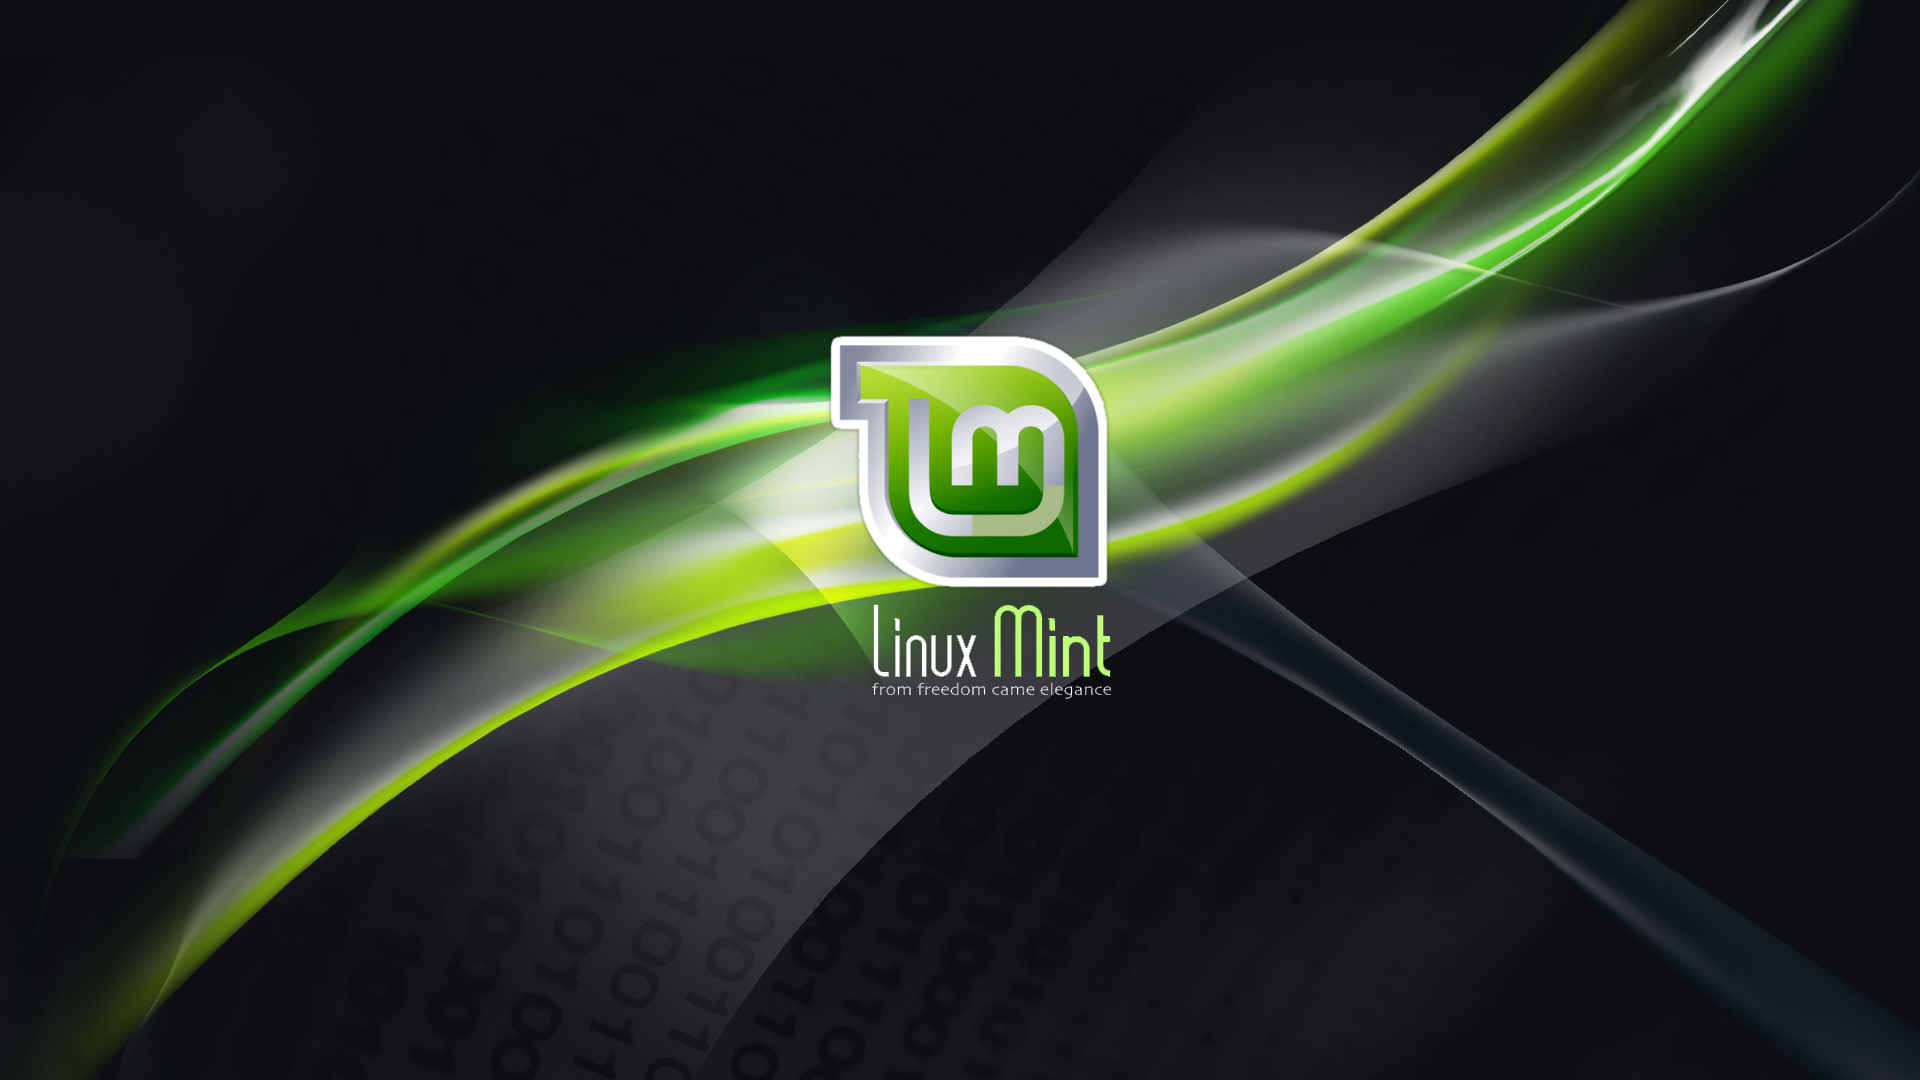 Hãy cùng chiêm ngưỡng những hình nền Linux Mint tuyệt đẹp nhất với các thiết kế độc đáo và sắc nét. Click để xem ngay!